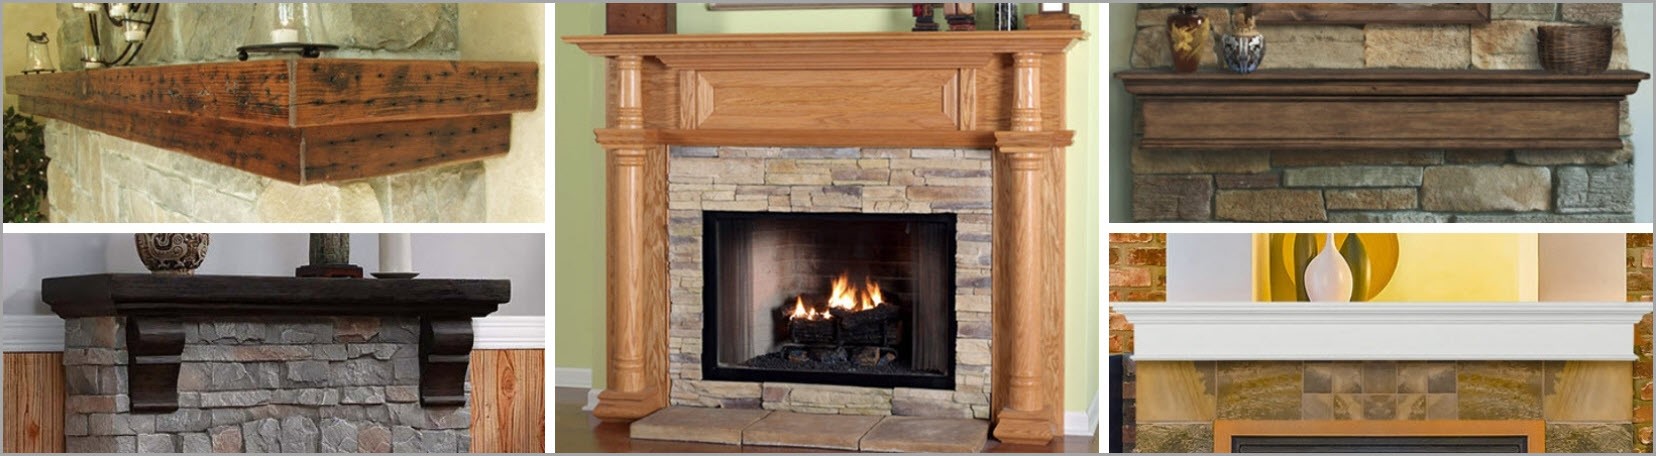 fireplace-mantels